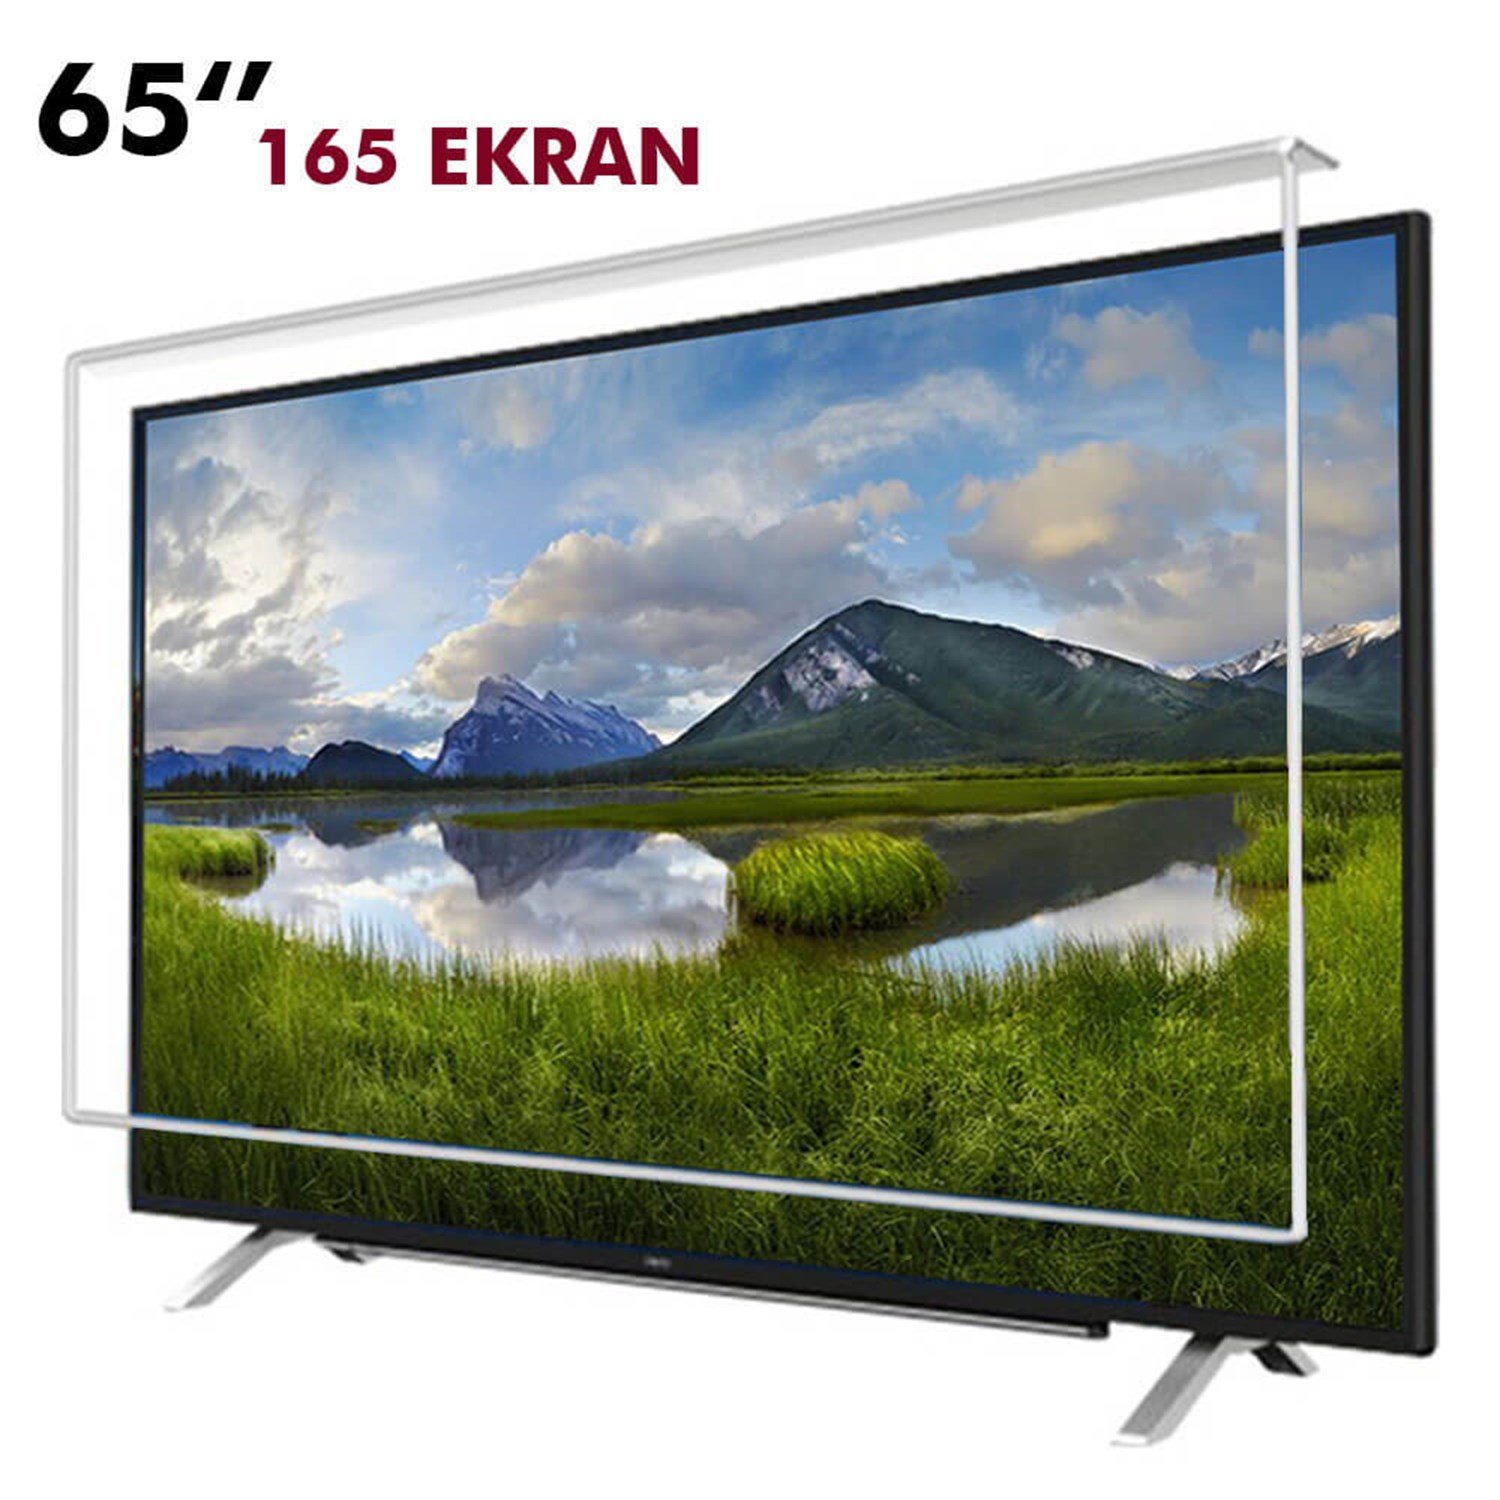 Tv Ekran Koruyucu 165 Ekran(65” inch) | Okularenkkat.com